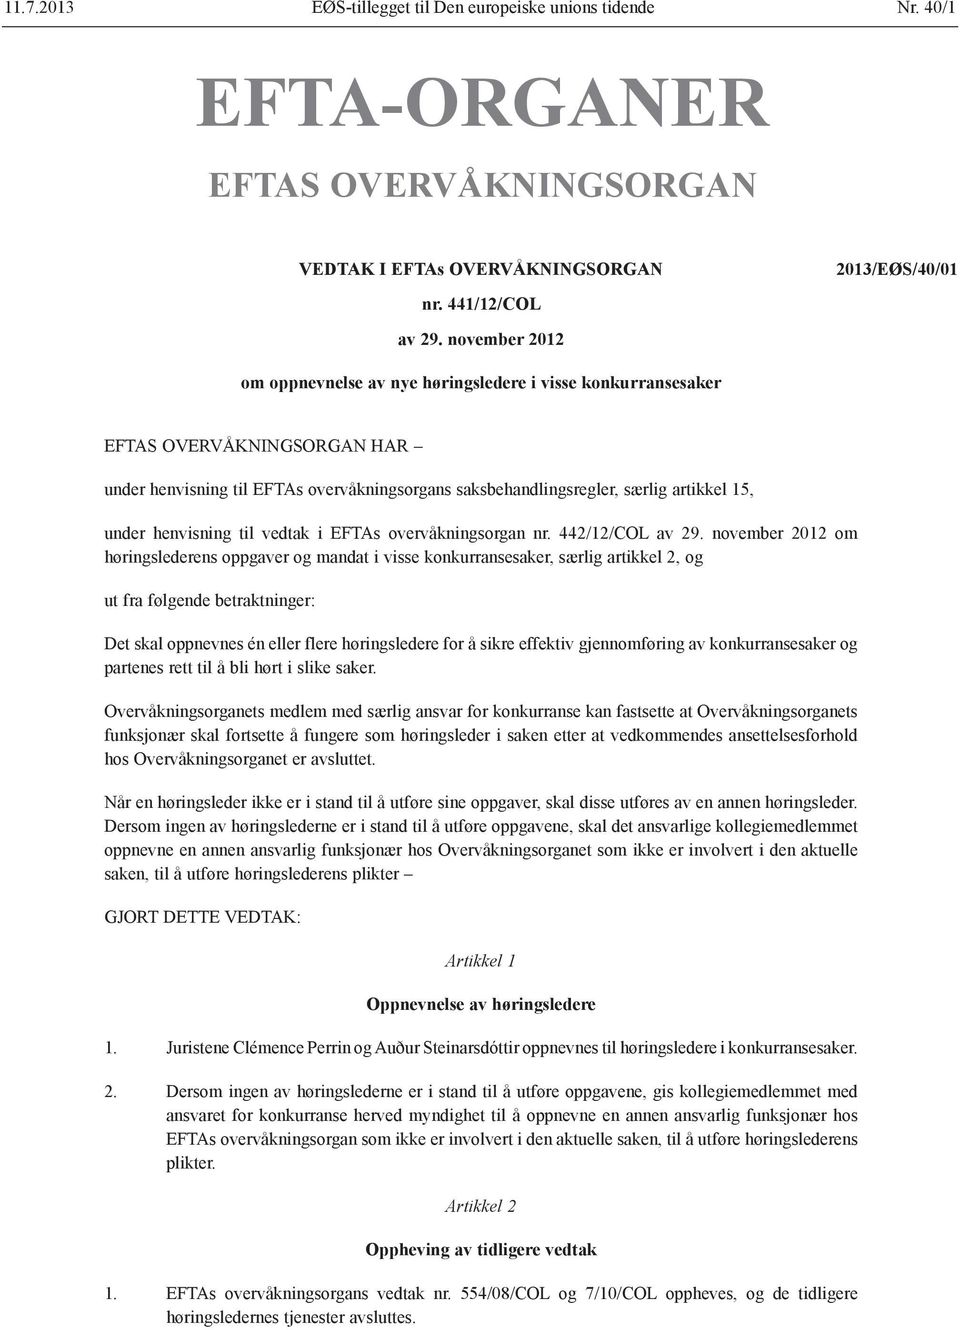 henvisning til vedtak i EFTAs overvåkningsorgan nr. 442/12/COL av 29.